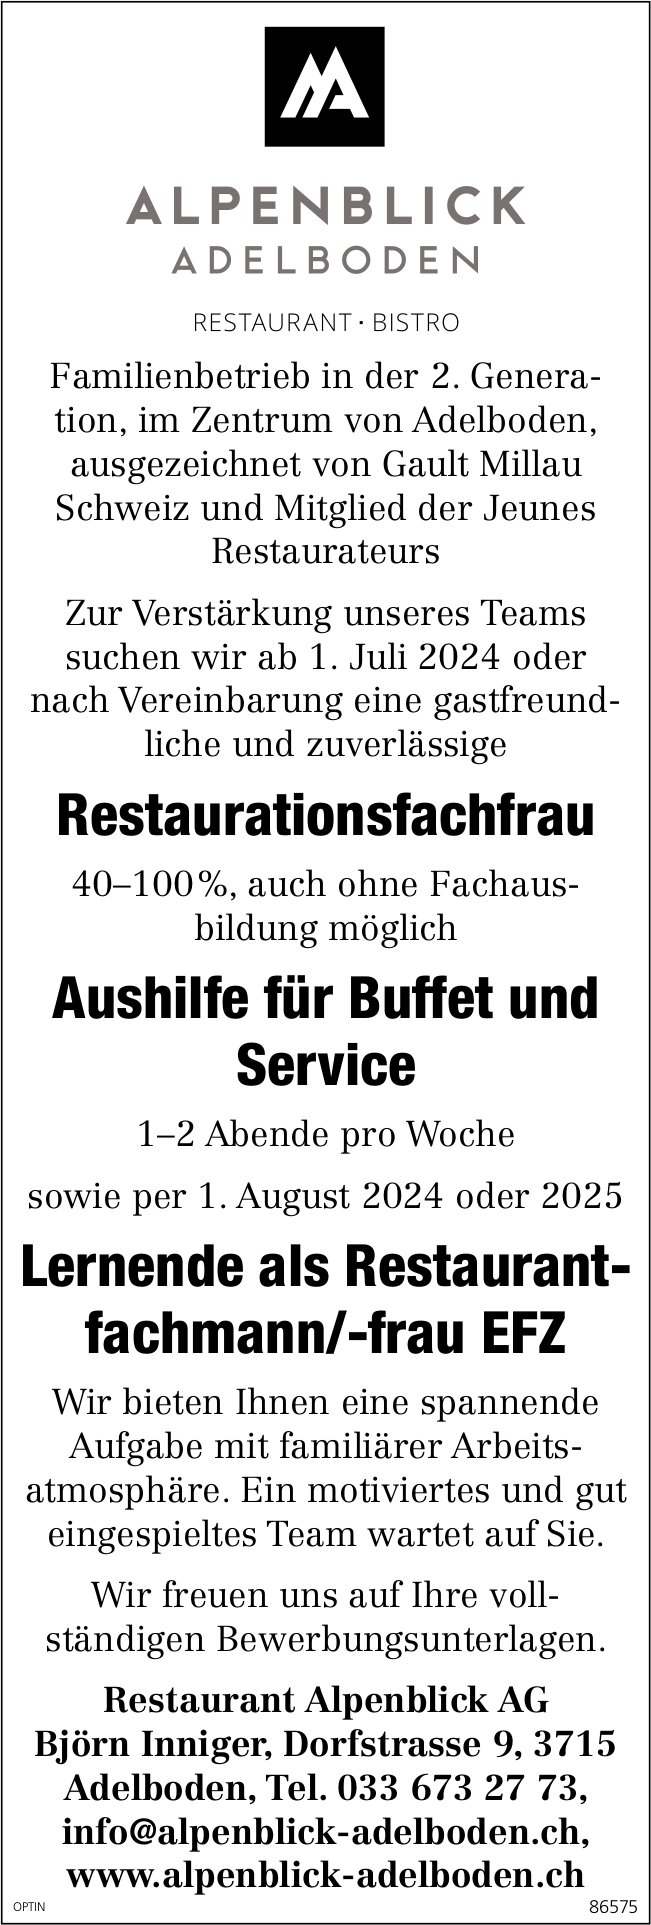 Restaurantionsfachfrau und Aushilfe Buffet und Service, Restaurant Alpenblick AG, Adelboden, gesucht und Lehrstelle als Restaurantfachmann/-frau EFZ, zu vergeben